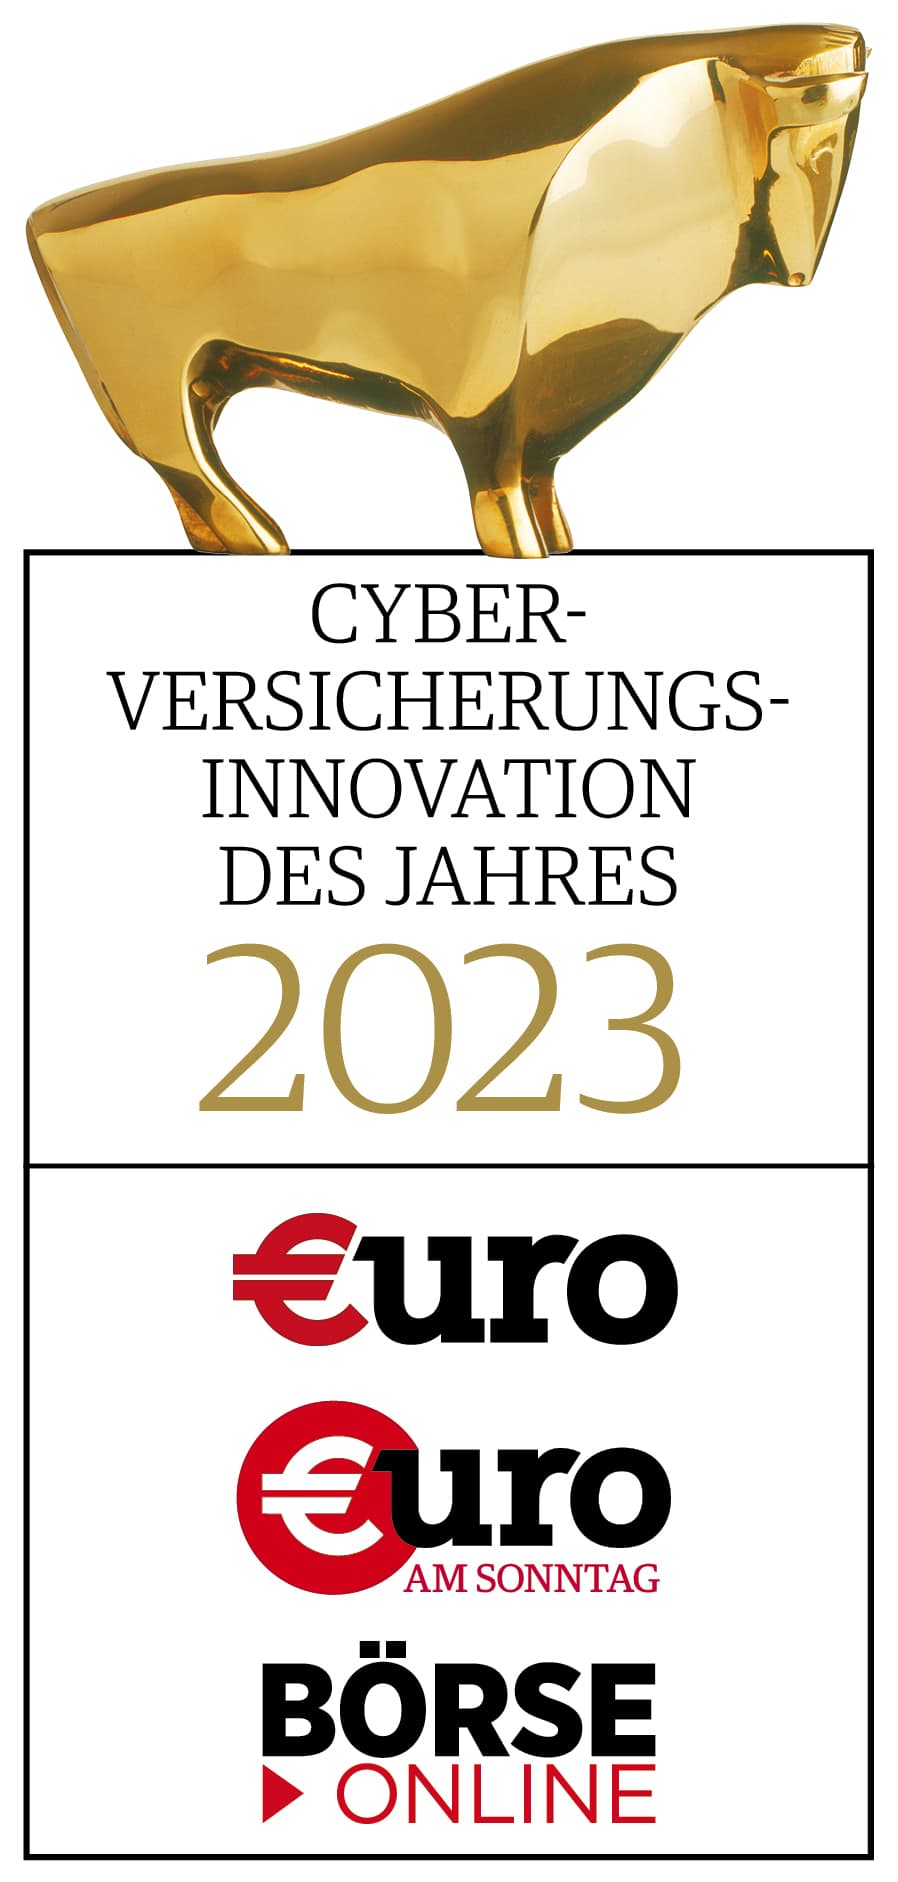 goldener bulle cyber versicherungsinnovation 2023 finanzen verlag